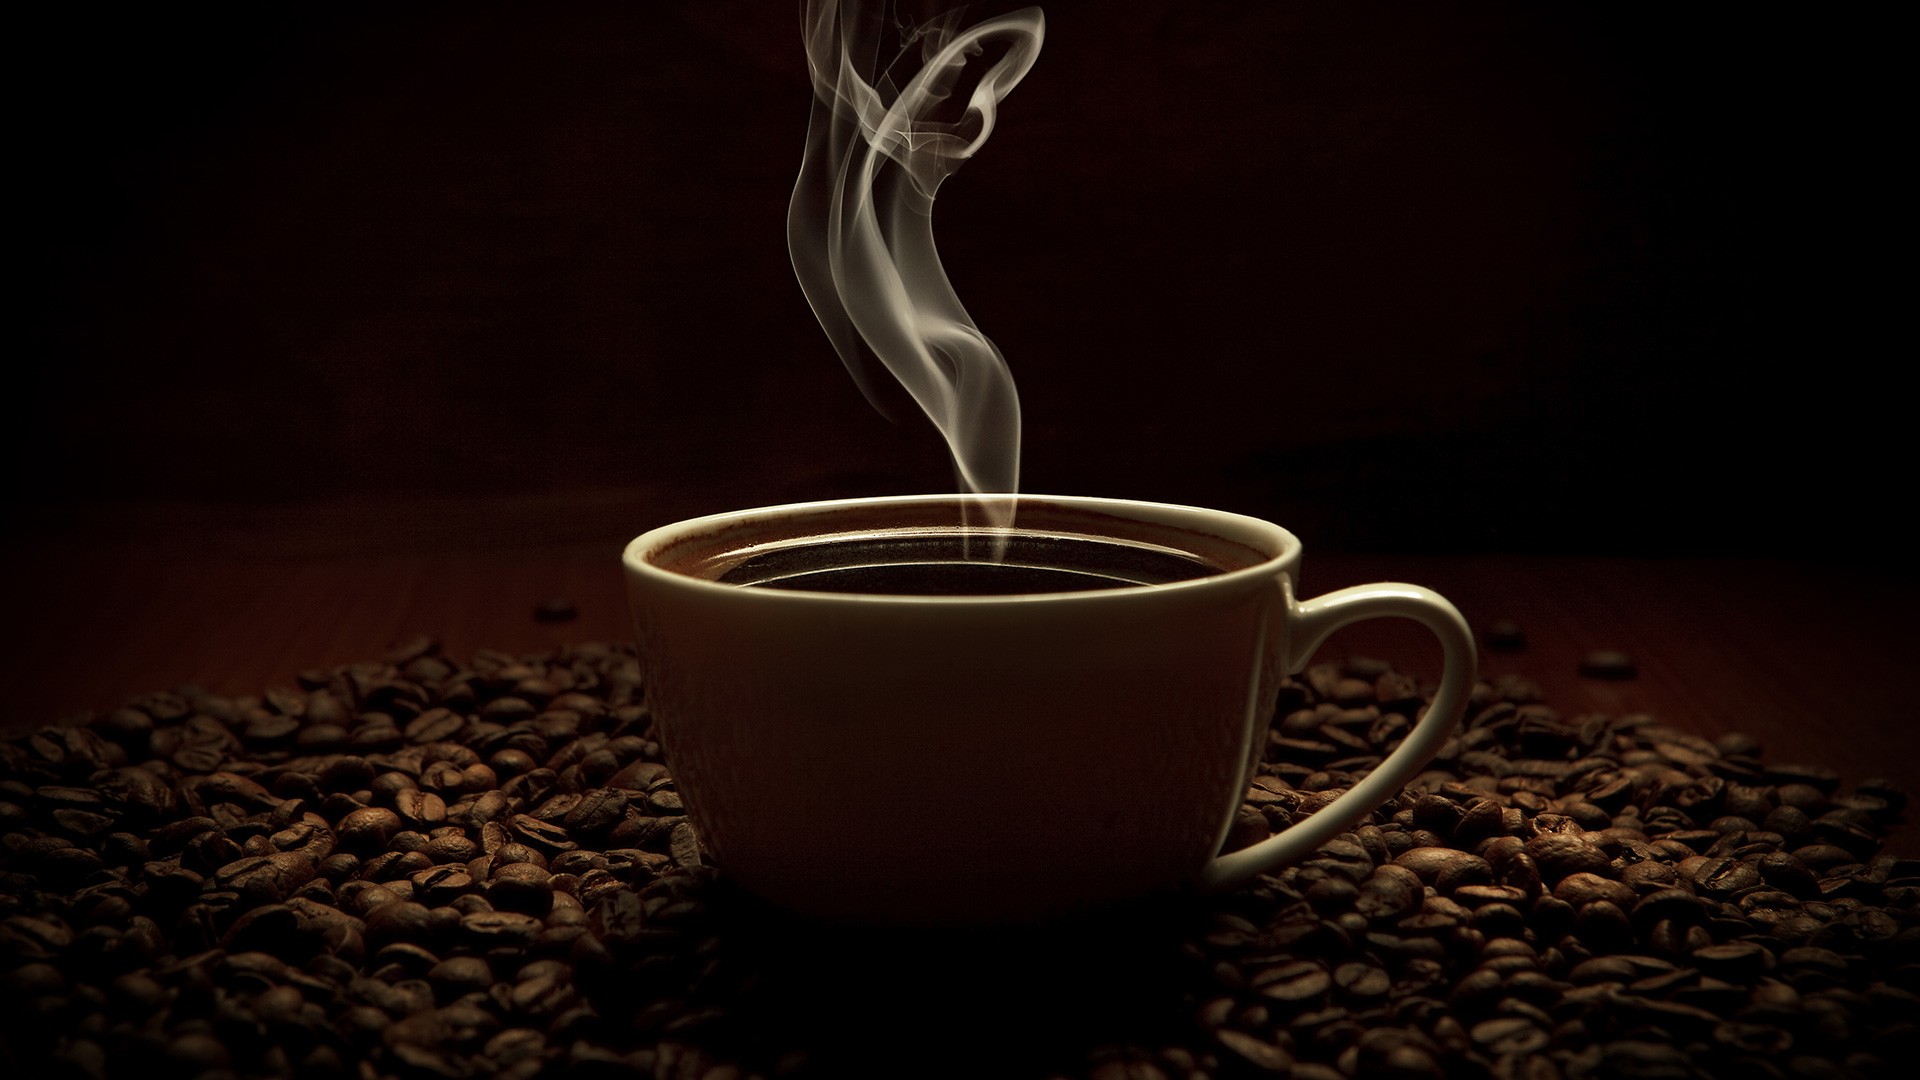 sfondo del caffè,tazza,tazza,tazza di caffè,caffeina,fotografia di still life